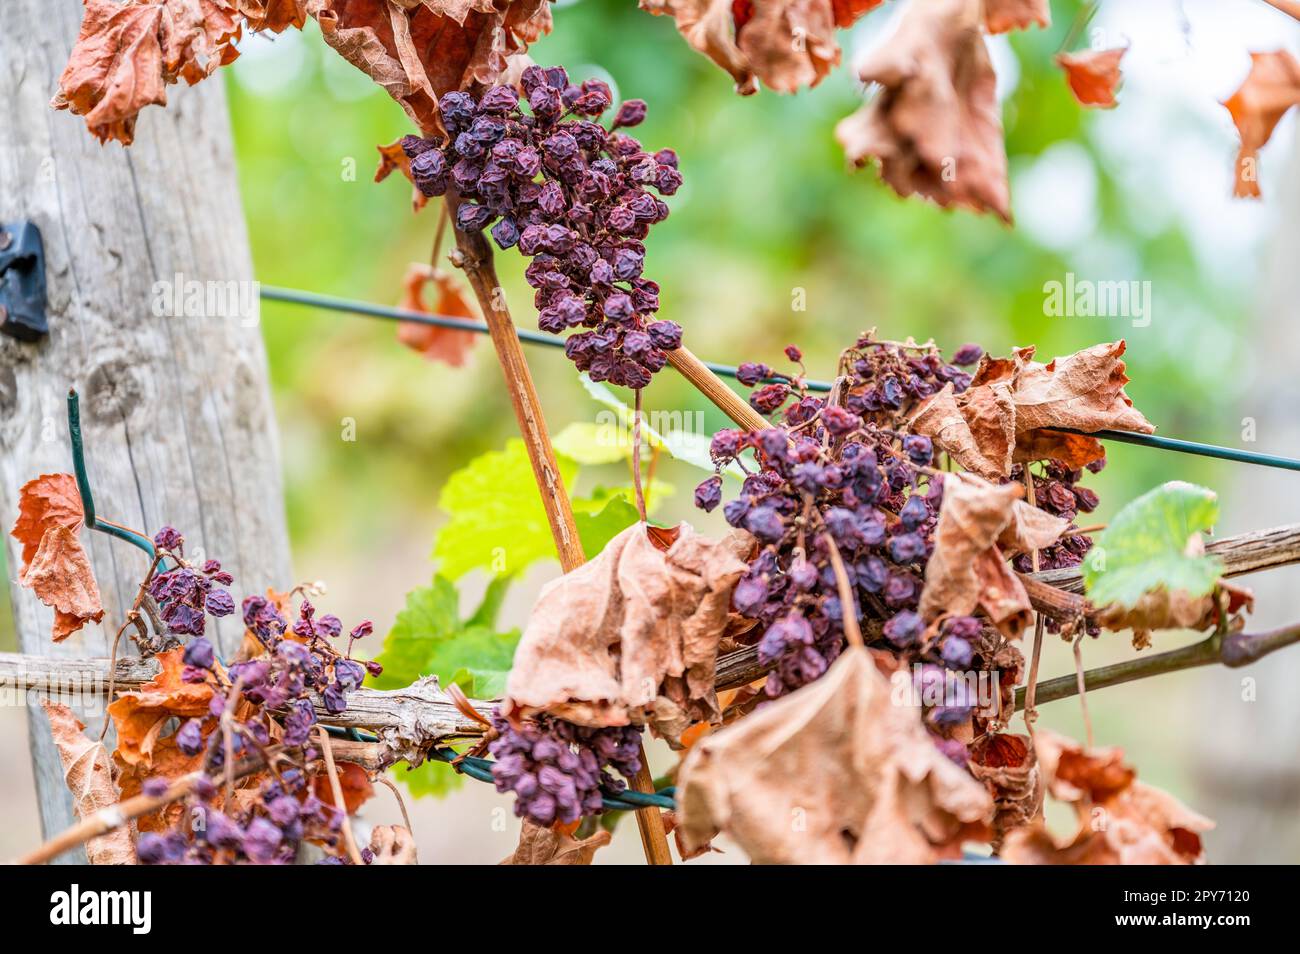 Schrumpfhaufen lila Trauben, zu viel Sonne und Hitze, schlechtes Wetter, an einer Rebpflanze hängen, schlechte Ernte, Weinberg Stockfoto